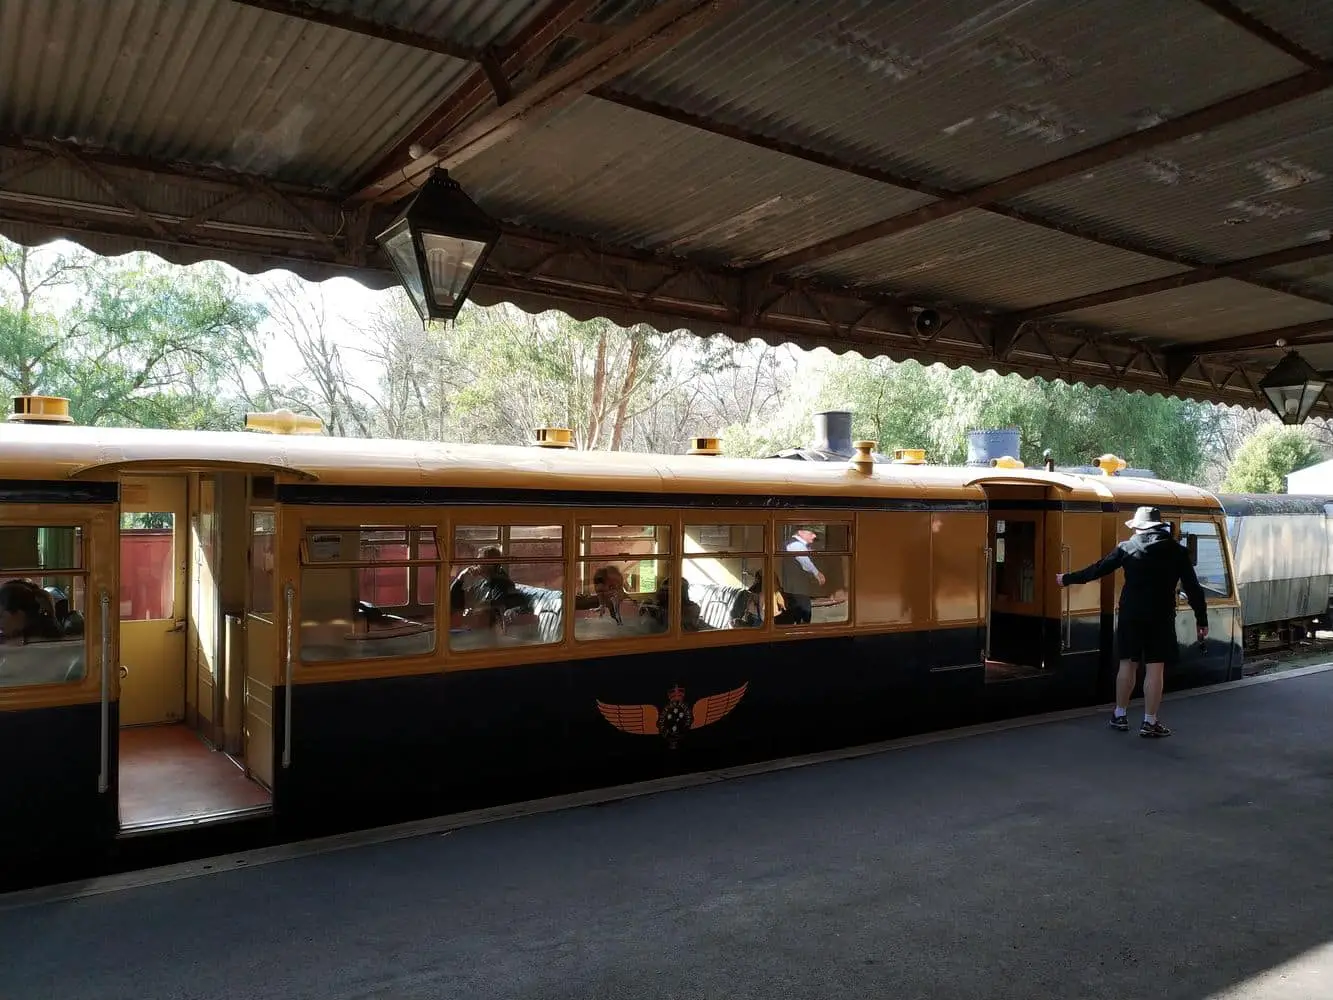 Yarra Valley Railway - Tourist Train Healesville, Victoria